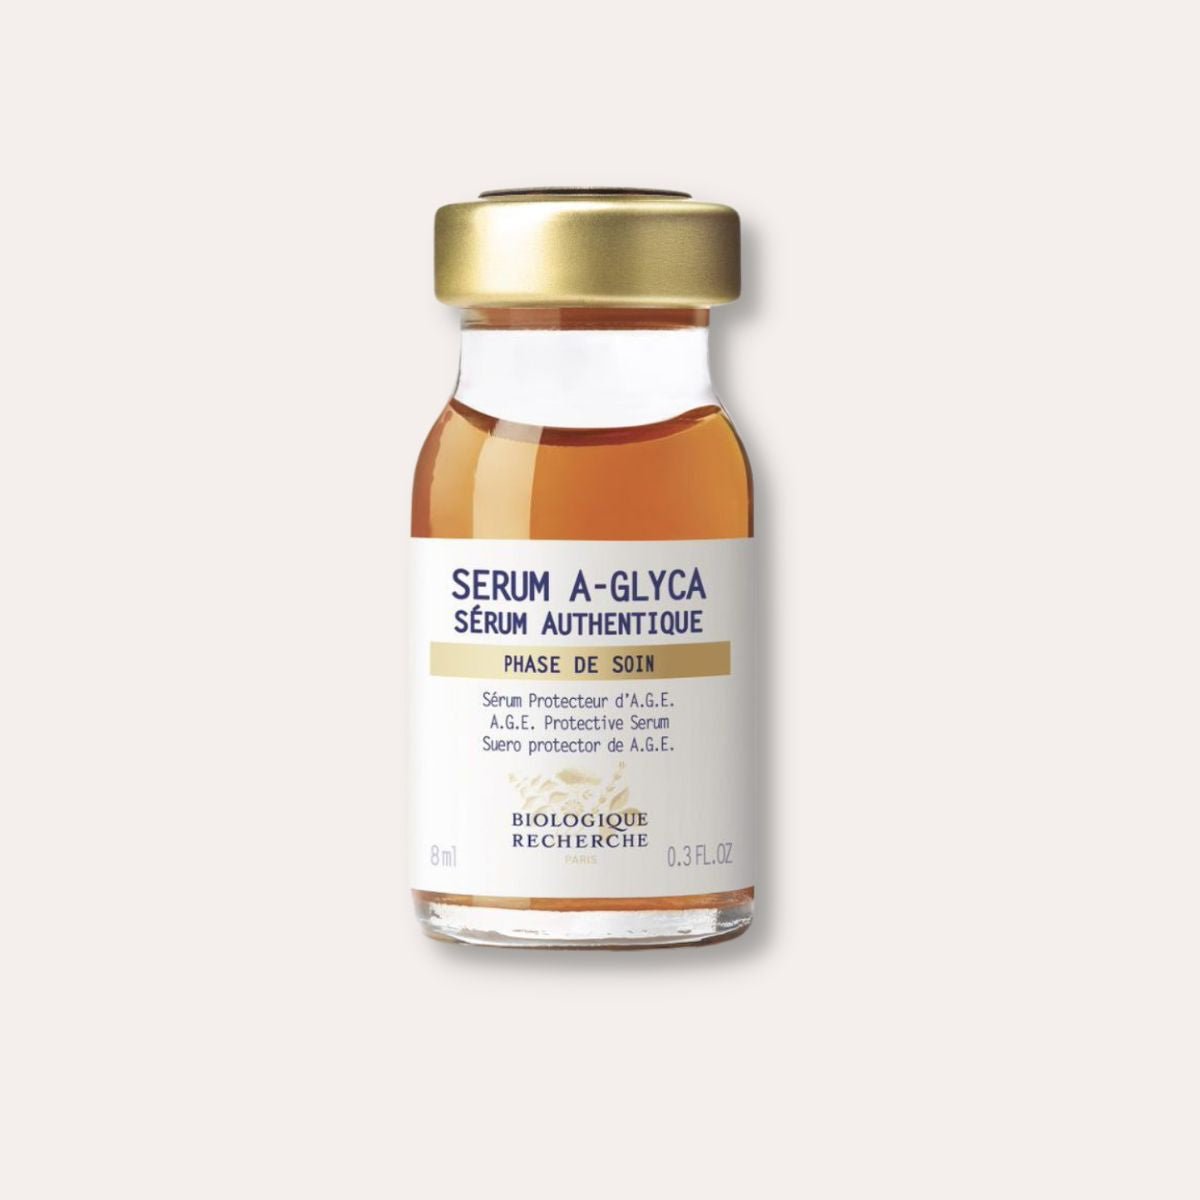 Serum A-Glyca - Sara Lorentsen Skin Expert